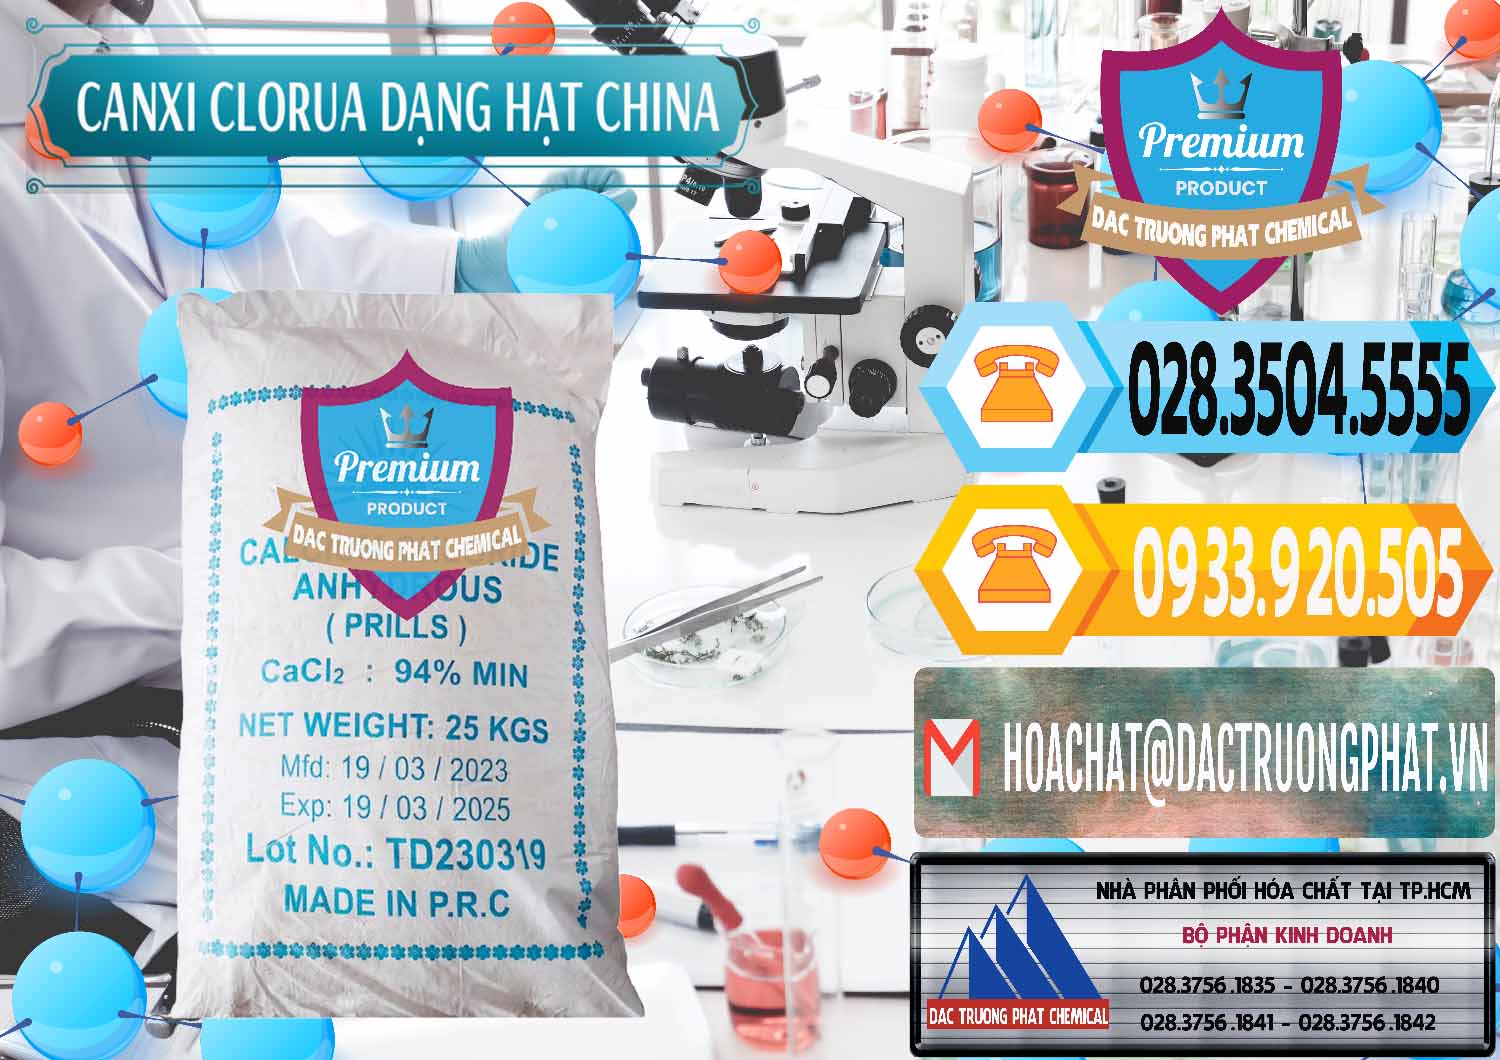 Bán ( cung cấp ) CaCl2 – Canxi Clorua 94% Dạng Hạt Trung Quốc China - 0373 - Nơi chuyên phân phối và bán hóa chất tại TP.HCM - hoachattayrua.net